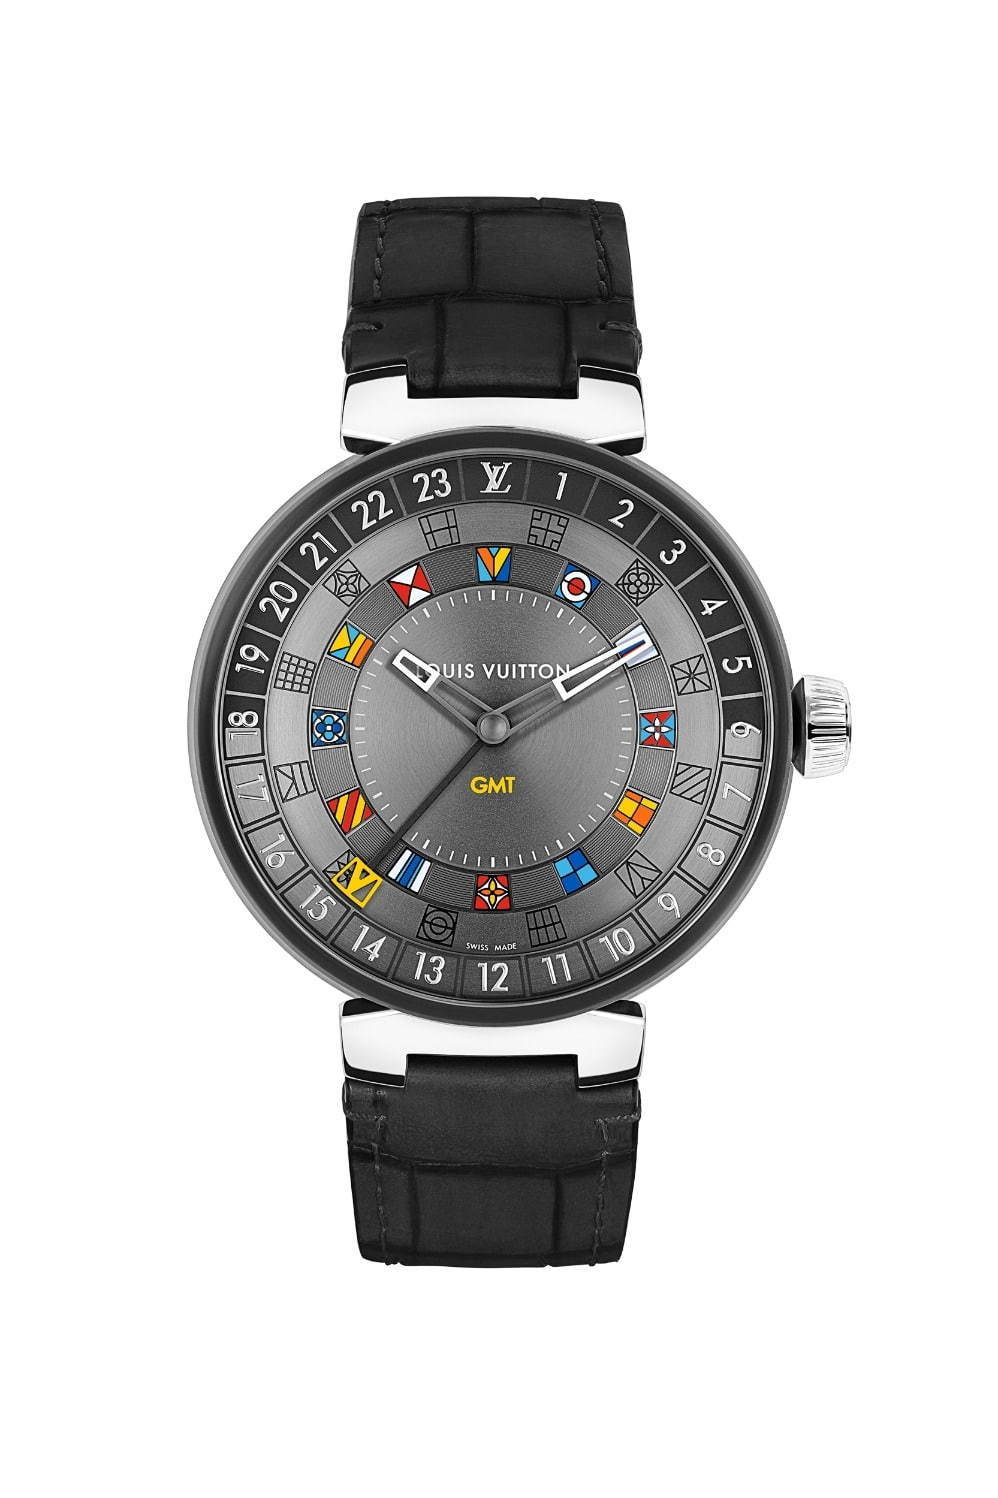 ルイ・ヴィトンの新作腕時計「タンブール ムーン デュアルタイム 